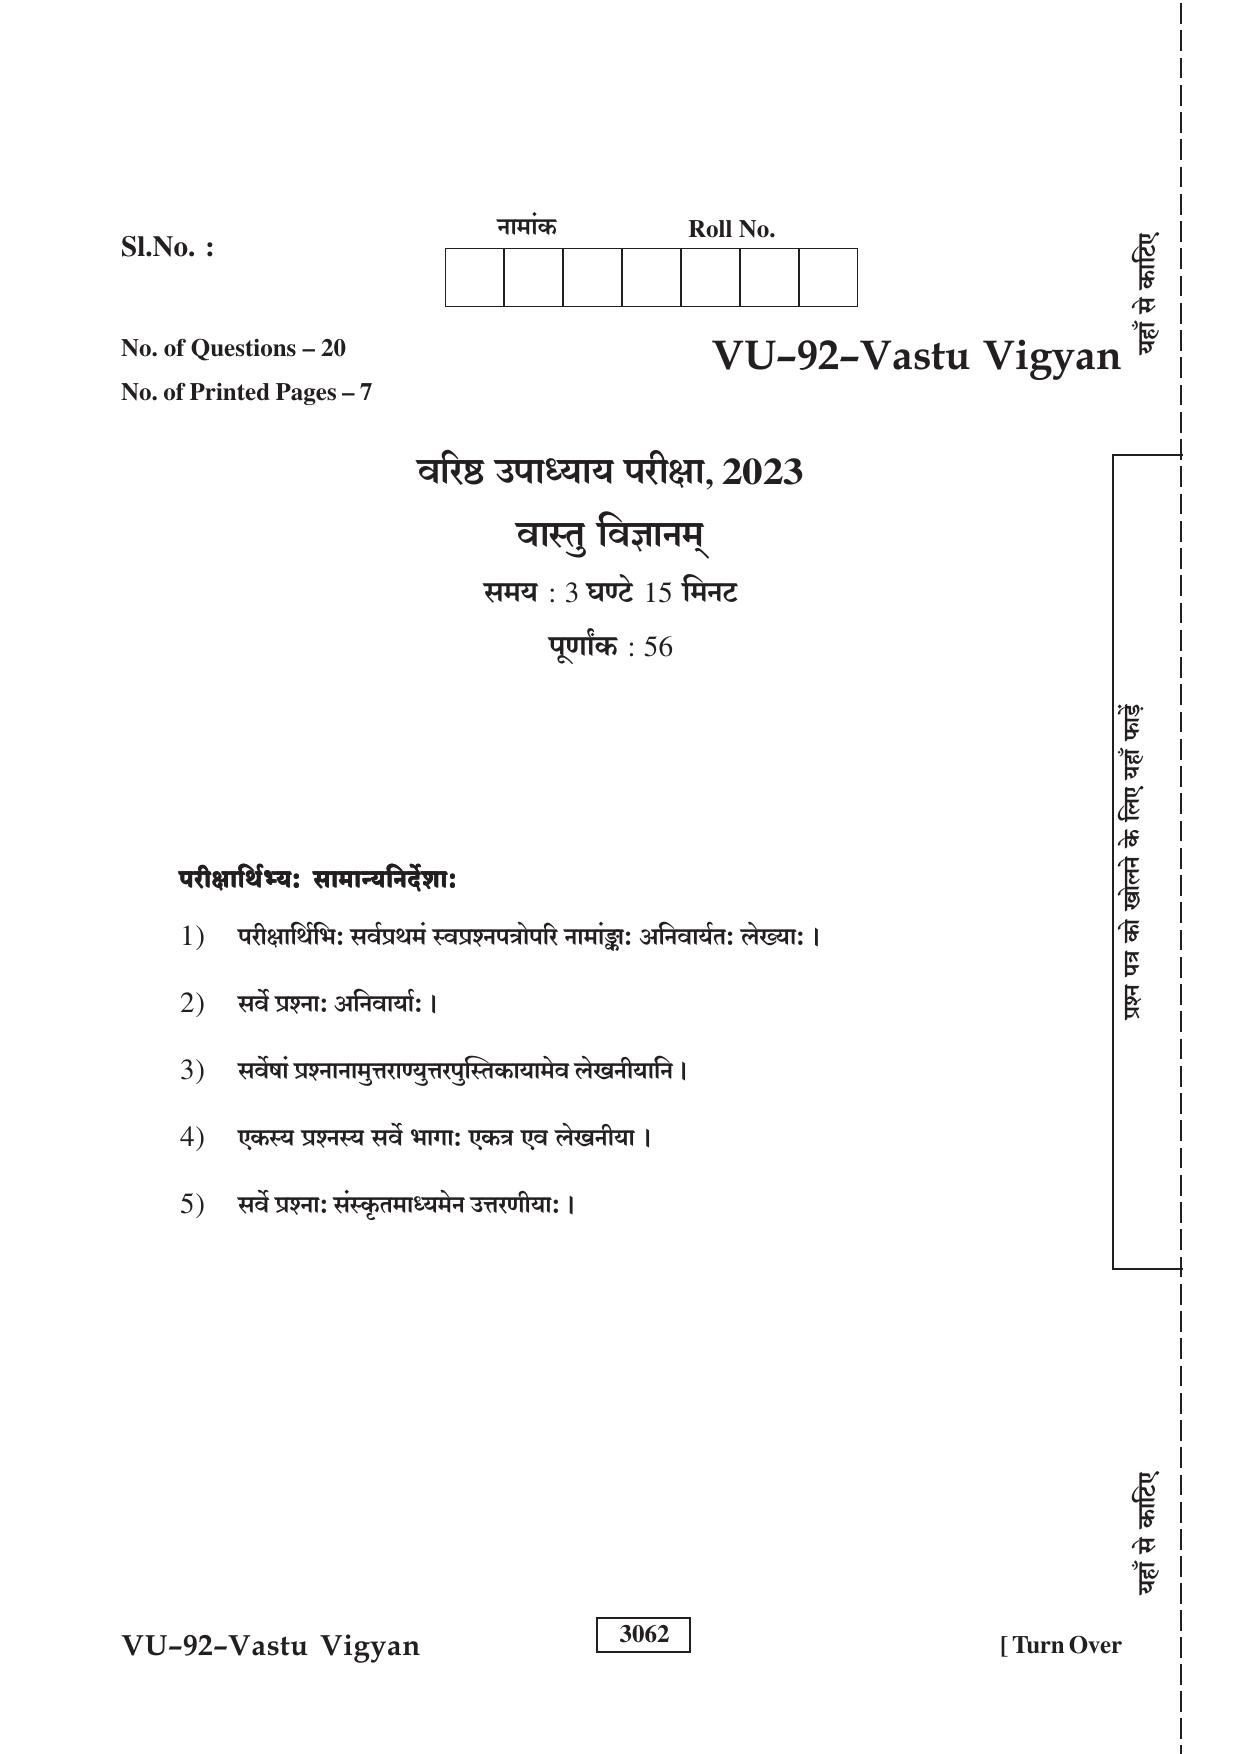 RBSE 2023 Vastu Vigyan Upadhyay Question Paper - Page 1